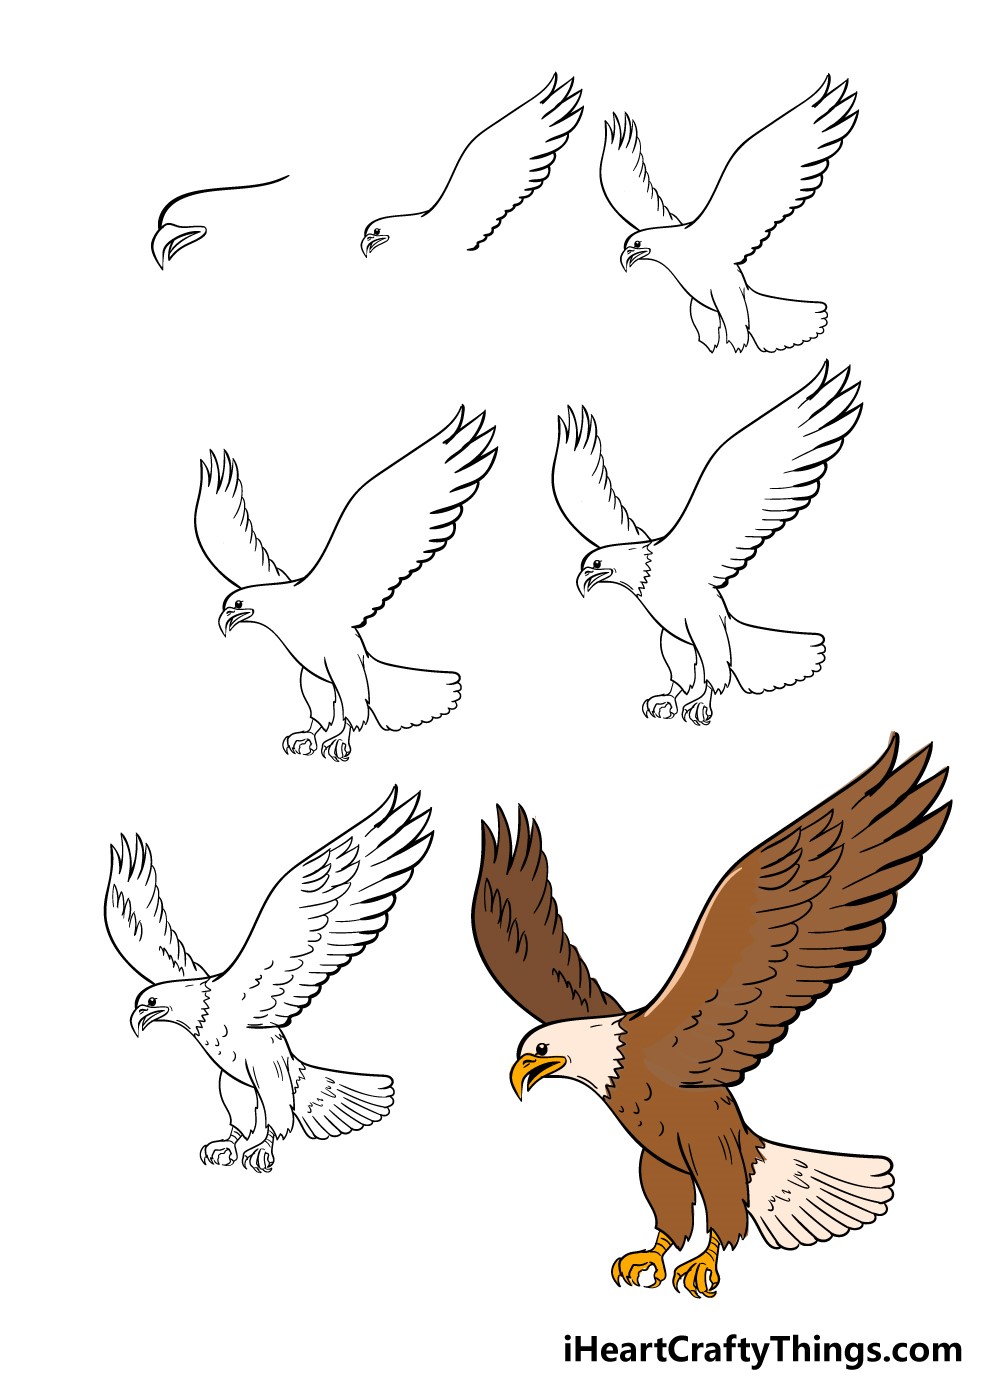 Adler zeichnen ideen